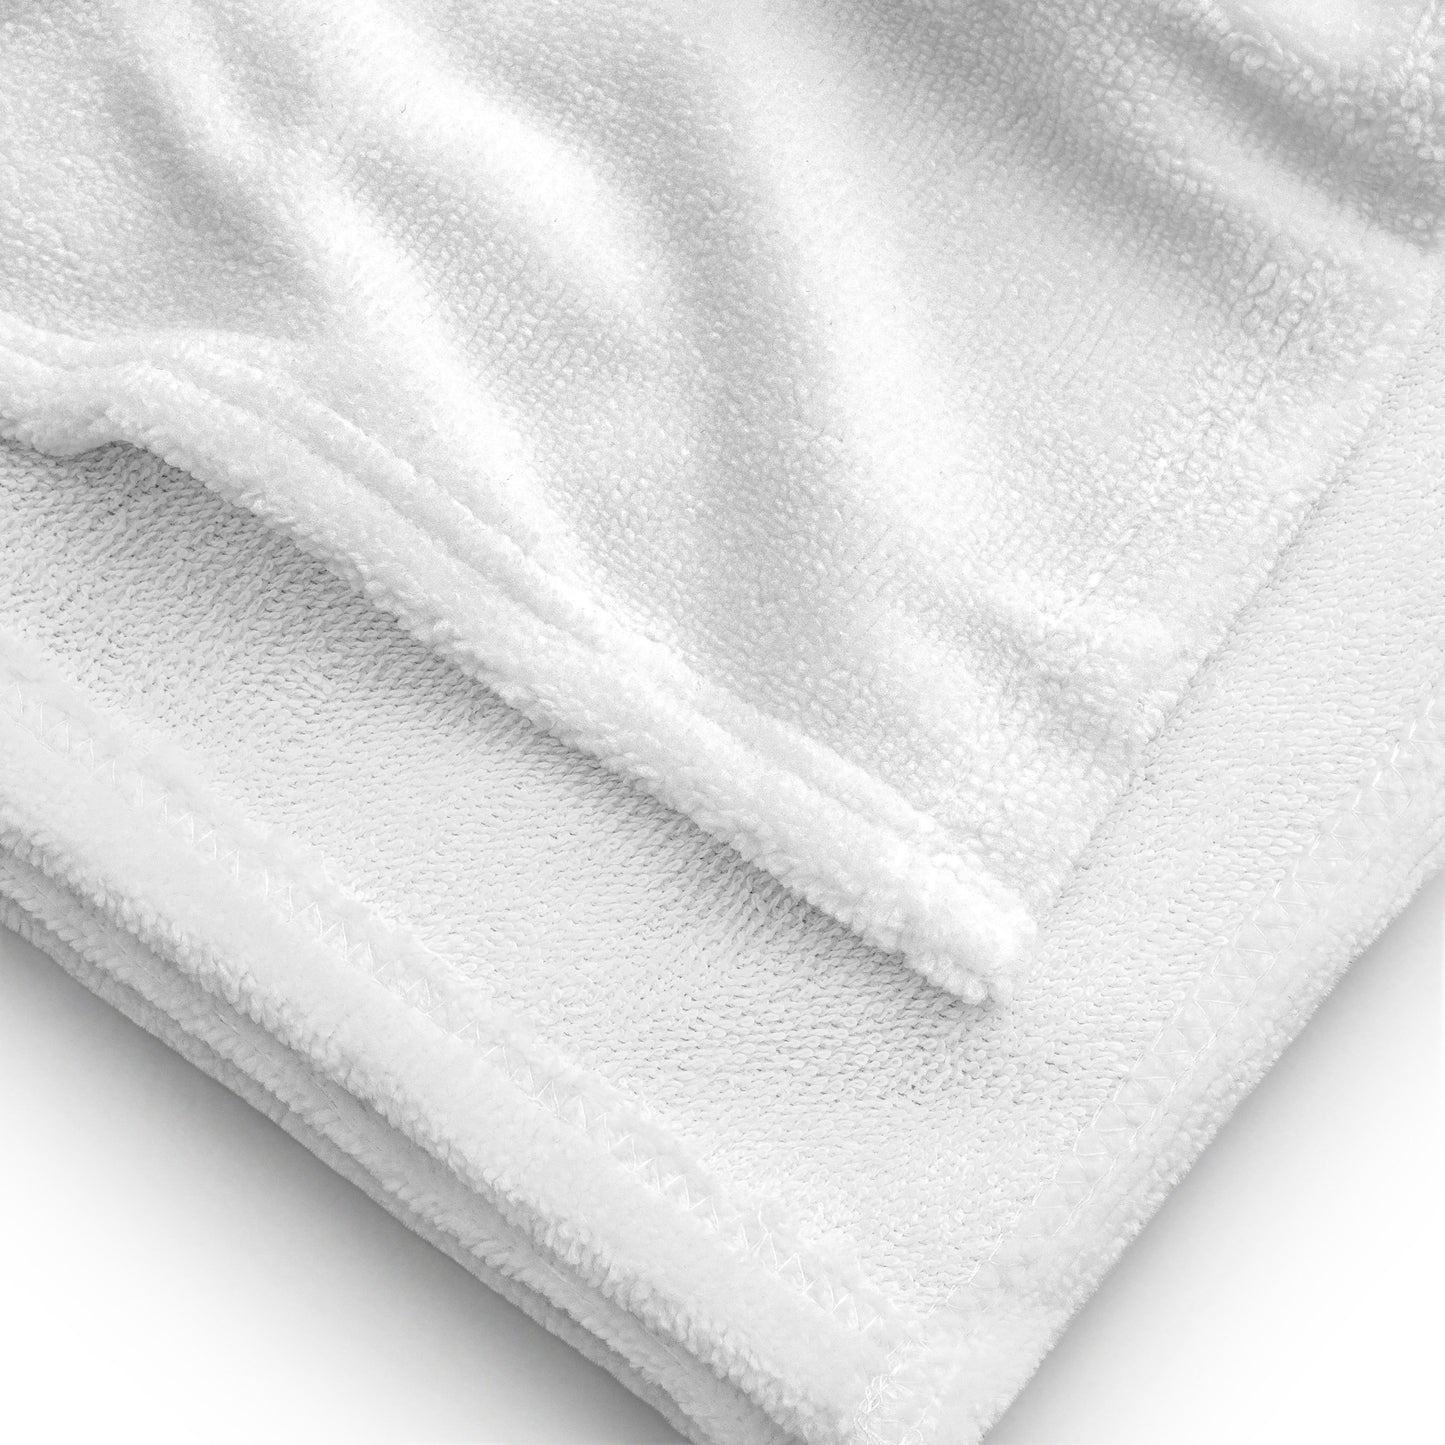 Official SBC Towel